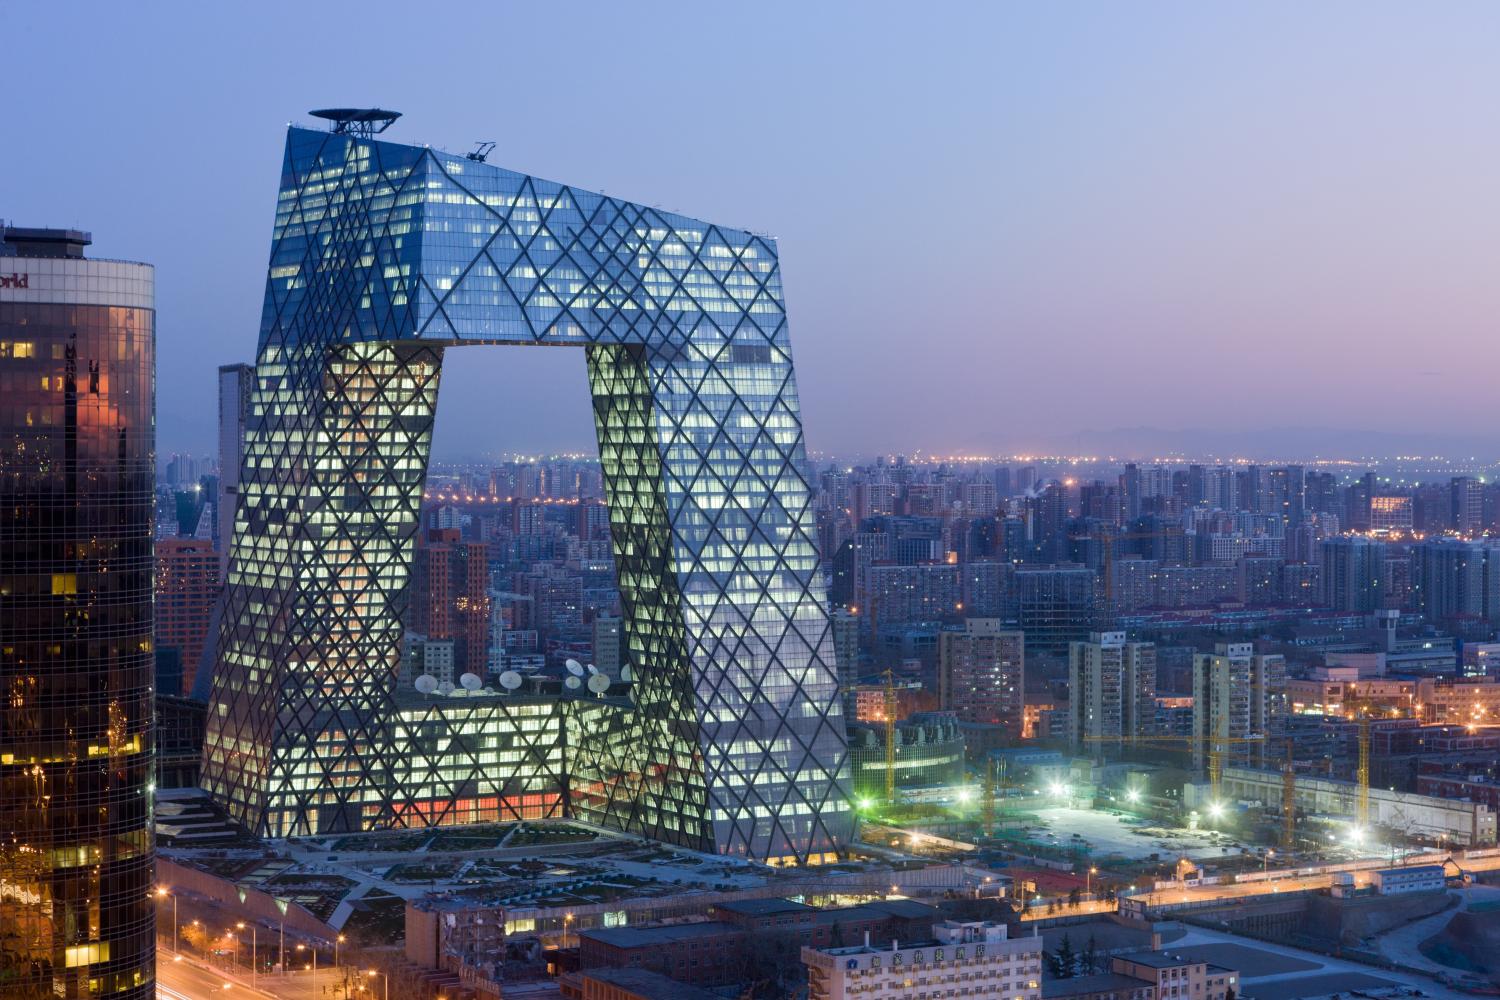 CCTV in Peking von Rem Koolhaas und Ole Scheeren